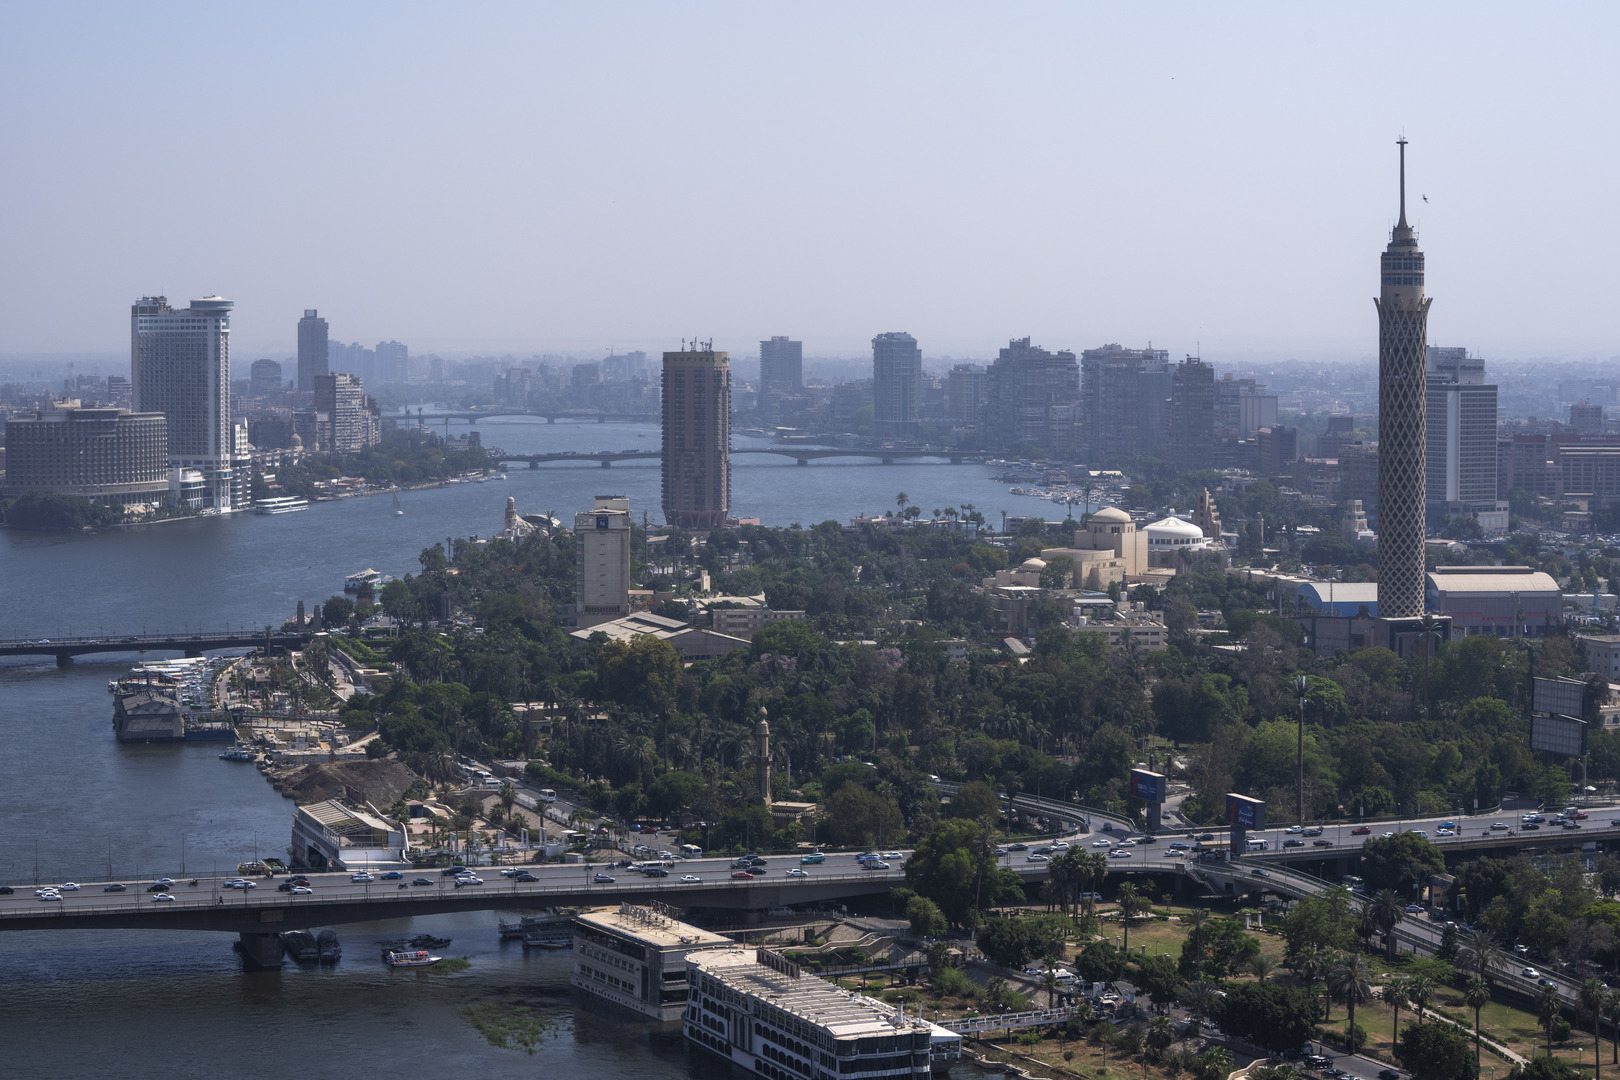 خبير اقتصادي لـRT: توقعات باستثمارات خليجية وقطرية هائلة في مصر